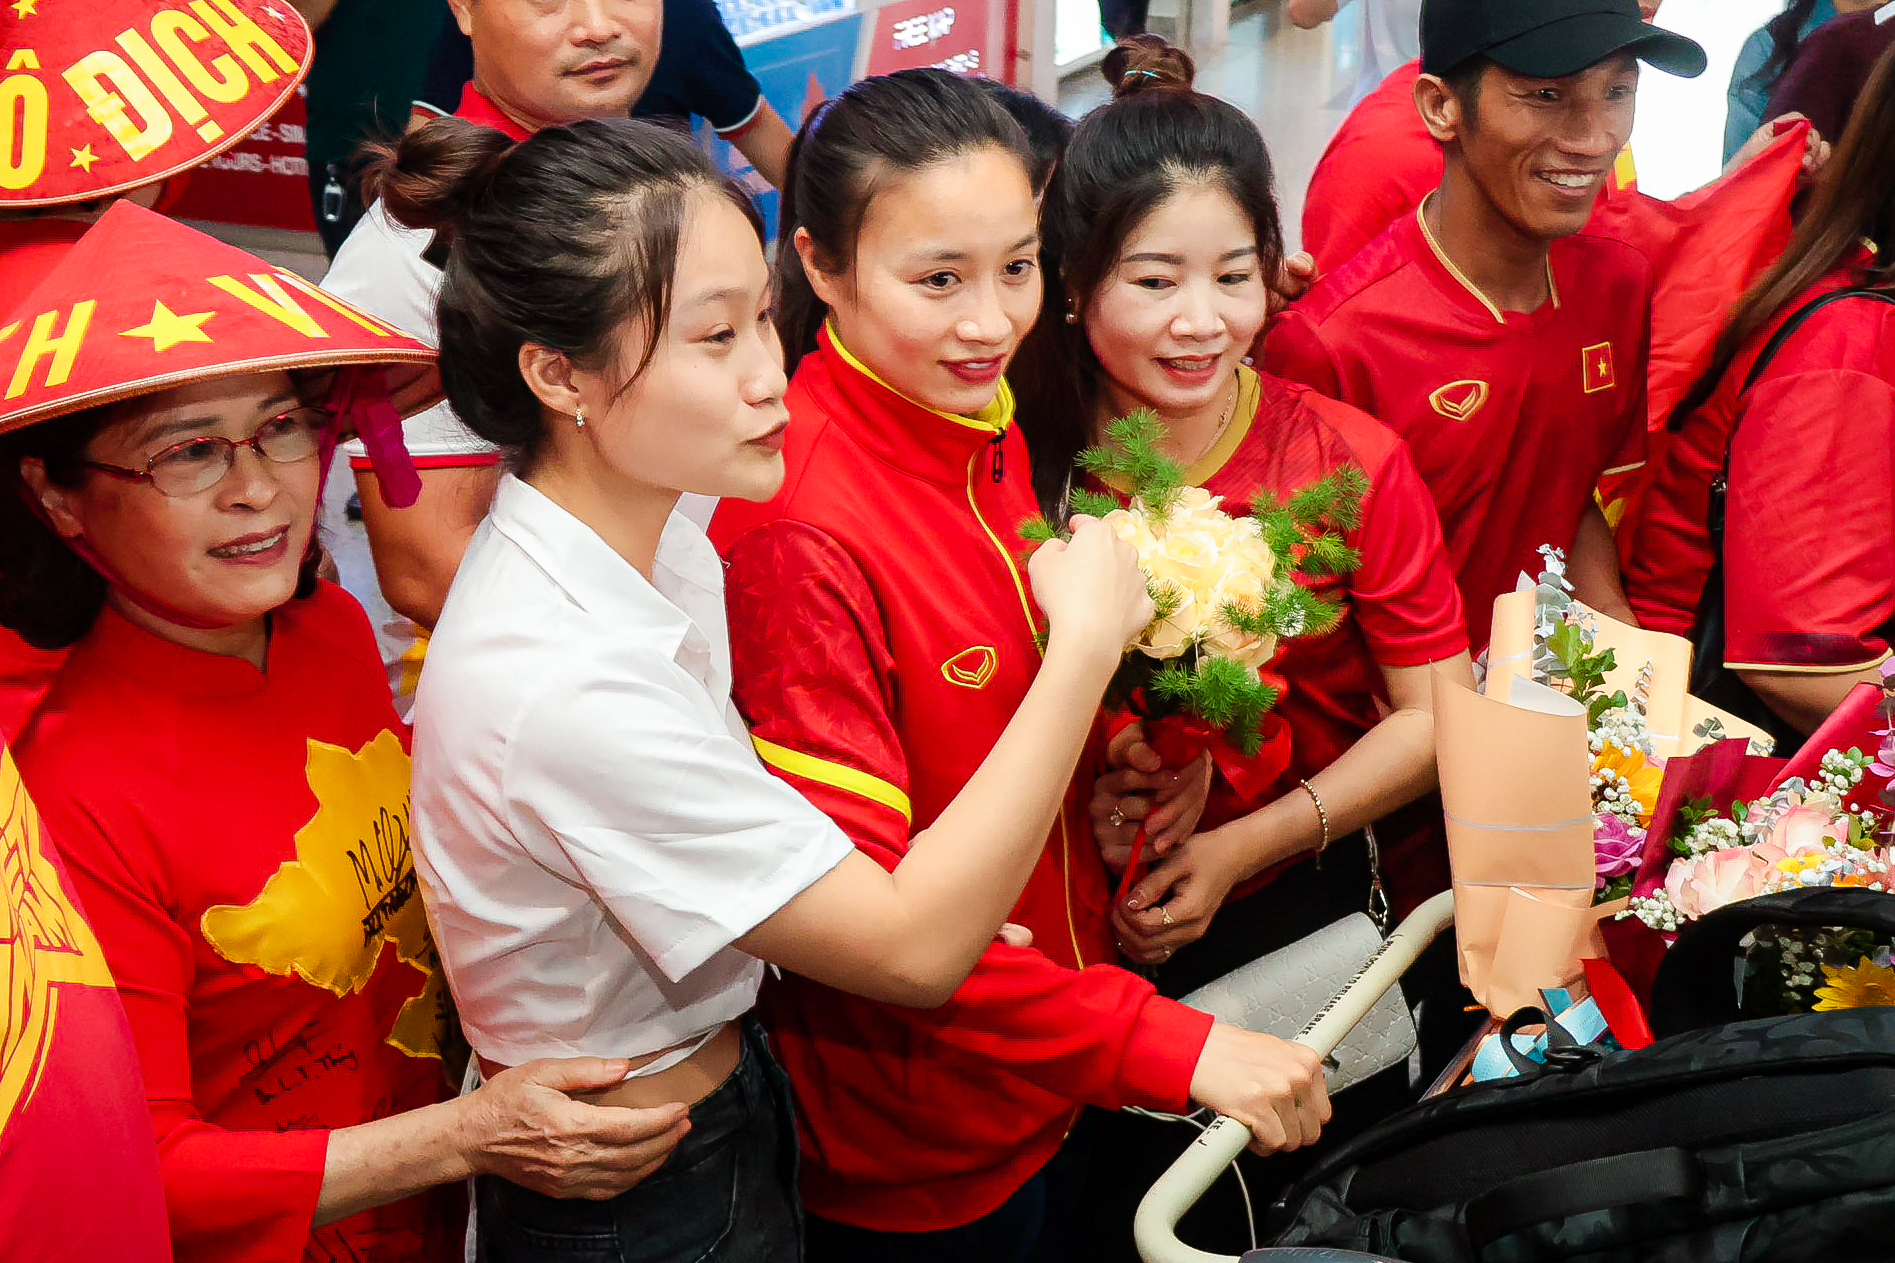 HLV Mai Đức Chung cùng nữ tuyển thủ rạng ngời trở về sau hành trình World Cup lịch sử - Ảnh 13.